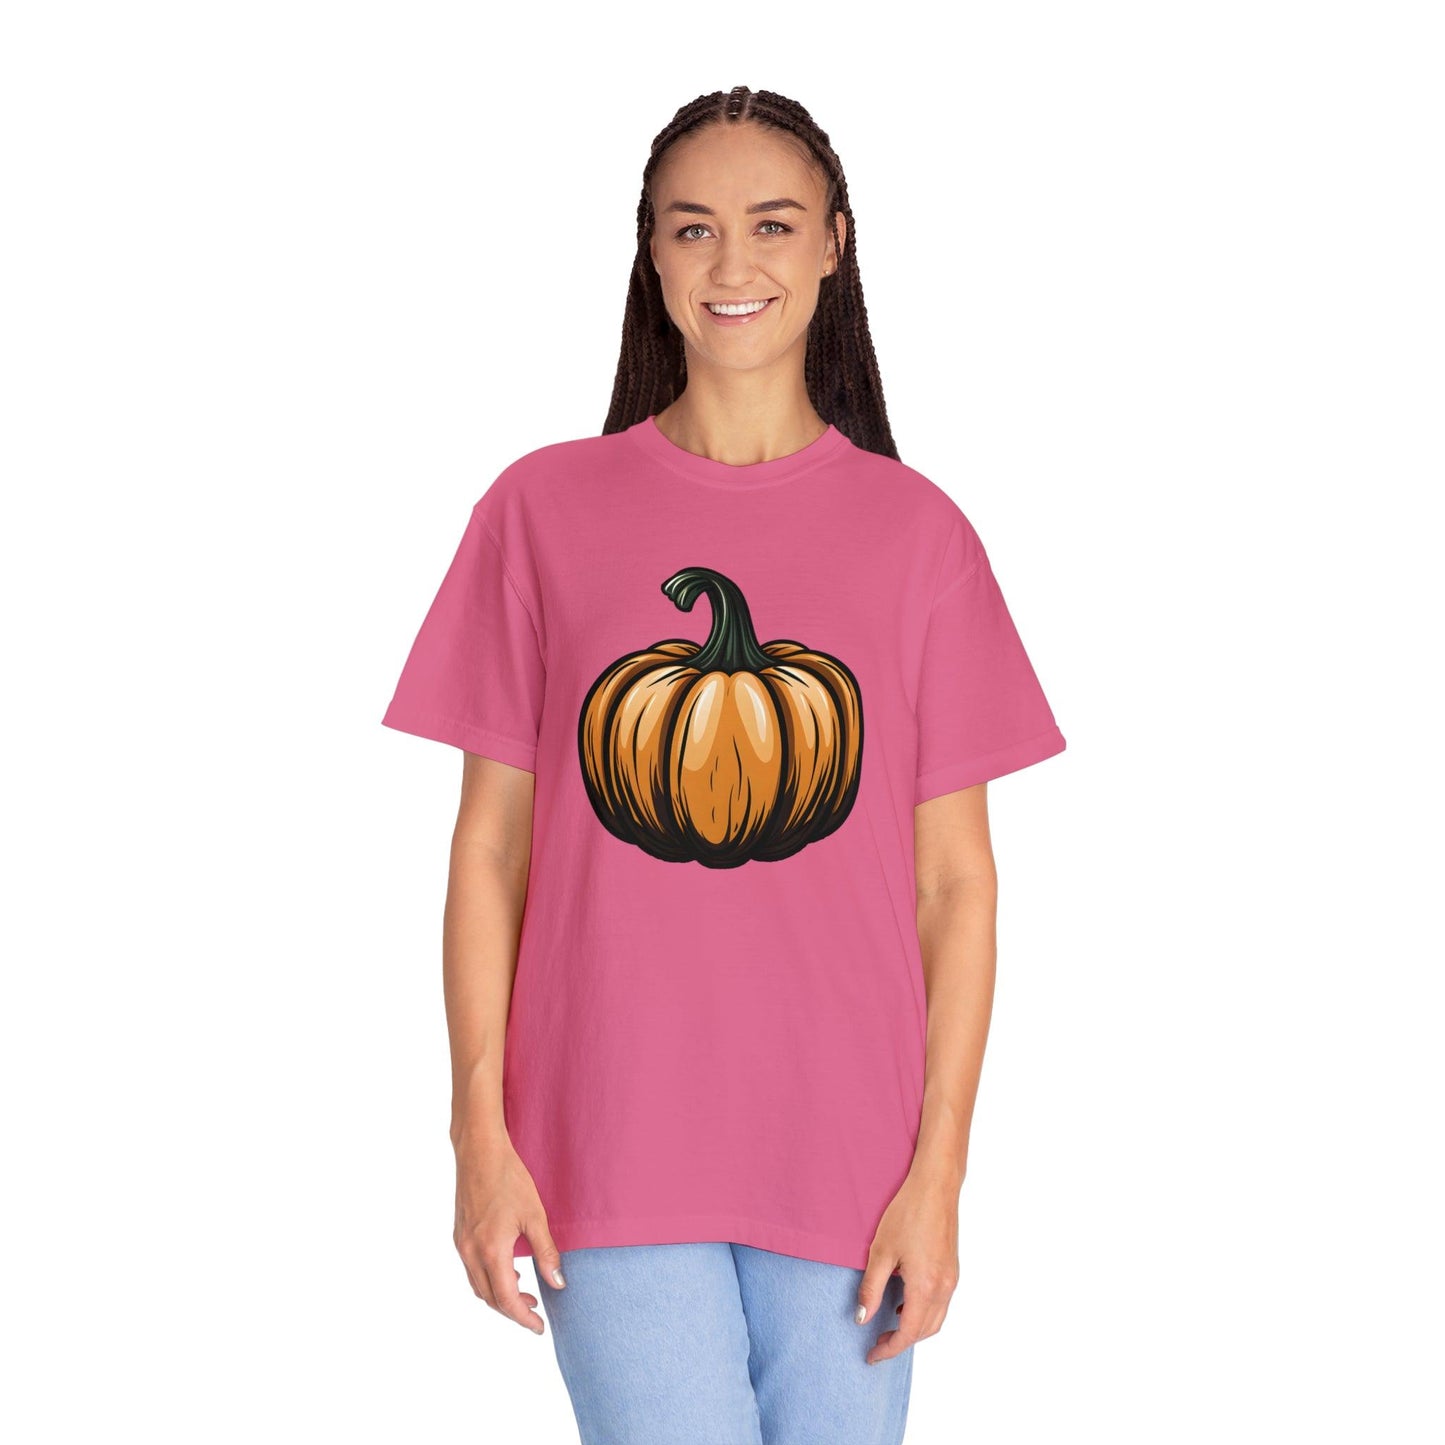 Pumpkin Shirt Halloween Shirt Fall Shirt Halloween Costume Pumpkin T Shirt - Cute Pumpkin Tee fall tshirt Halloween Gift Pumpkin Lover Shirt